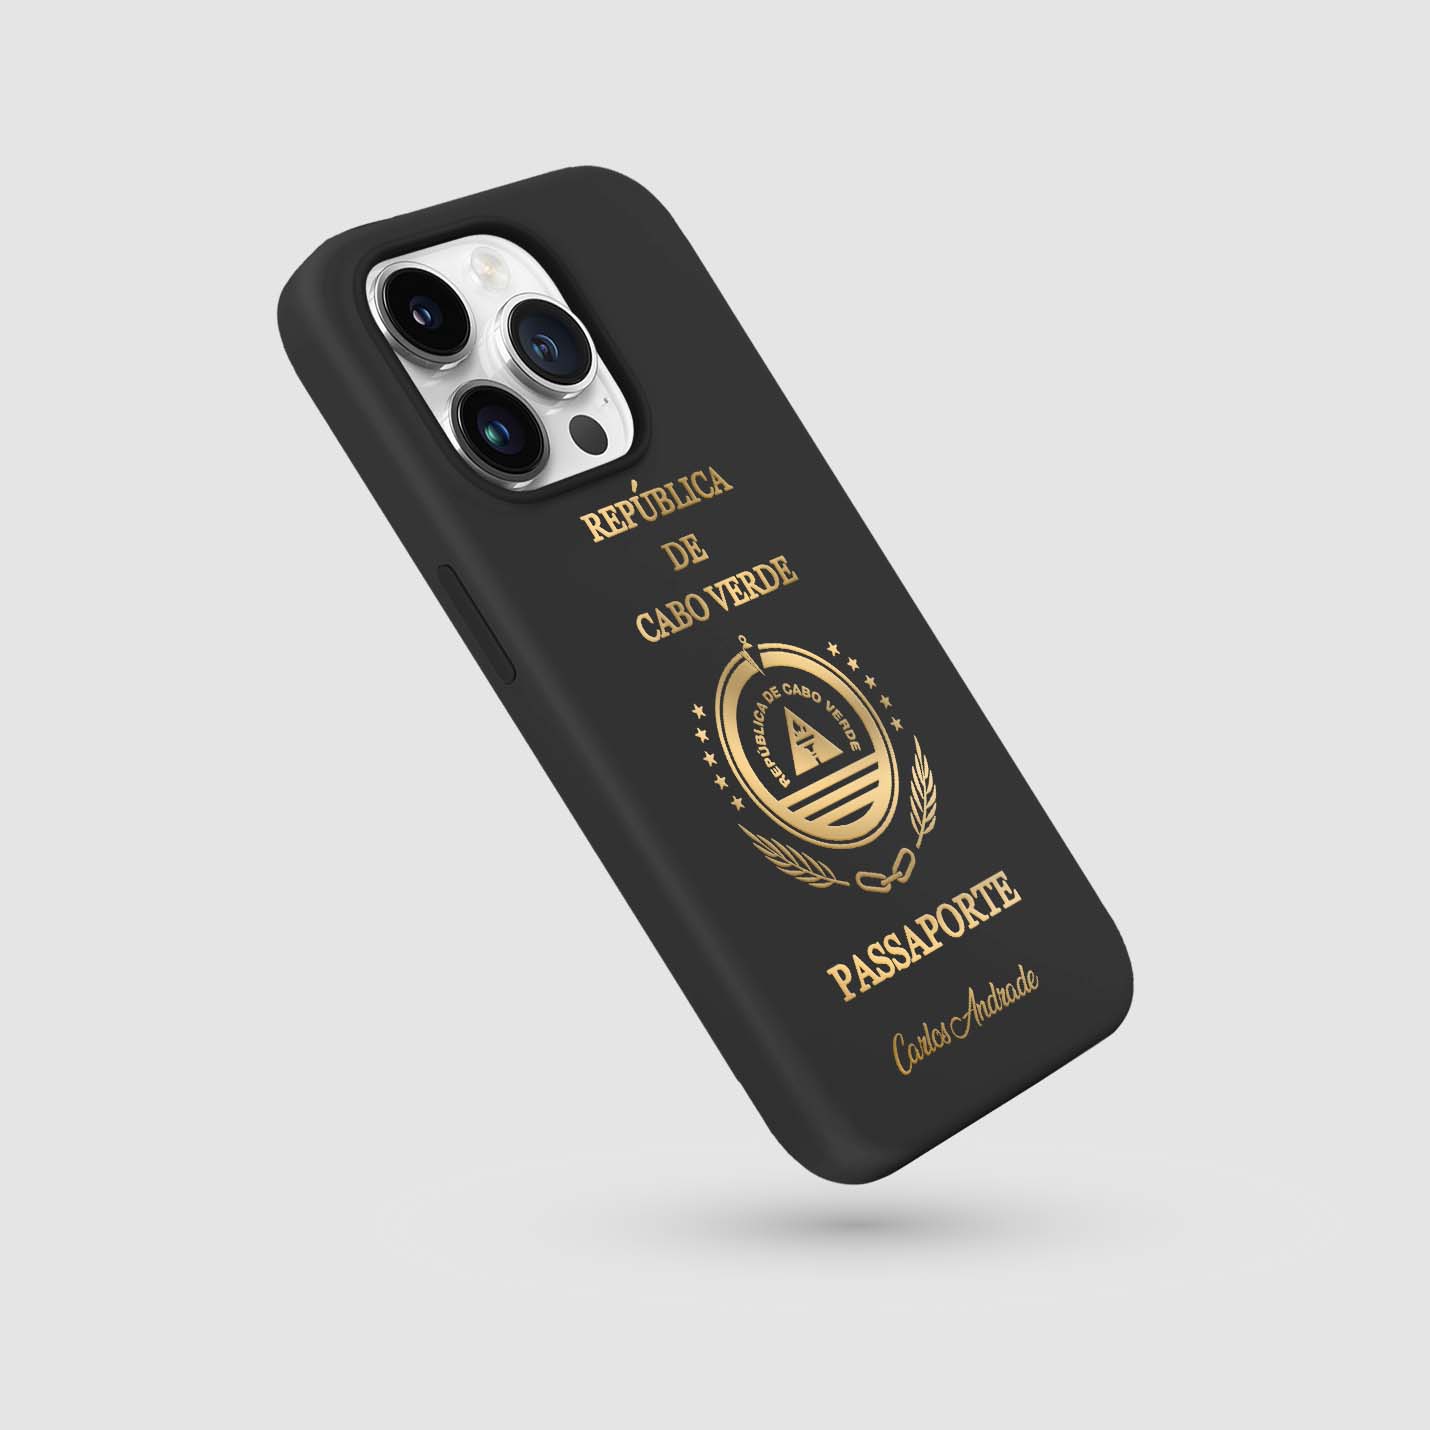 Handyhüllen mit Reisepass - Kap Verde - 1instaphone